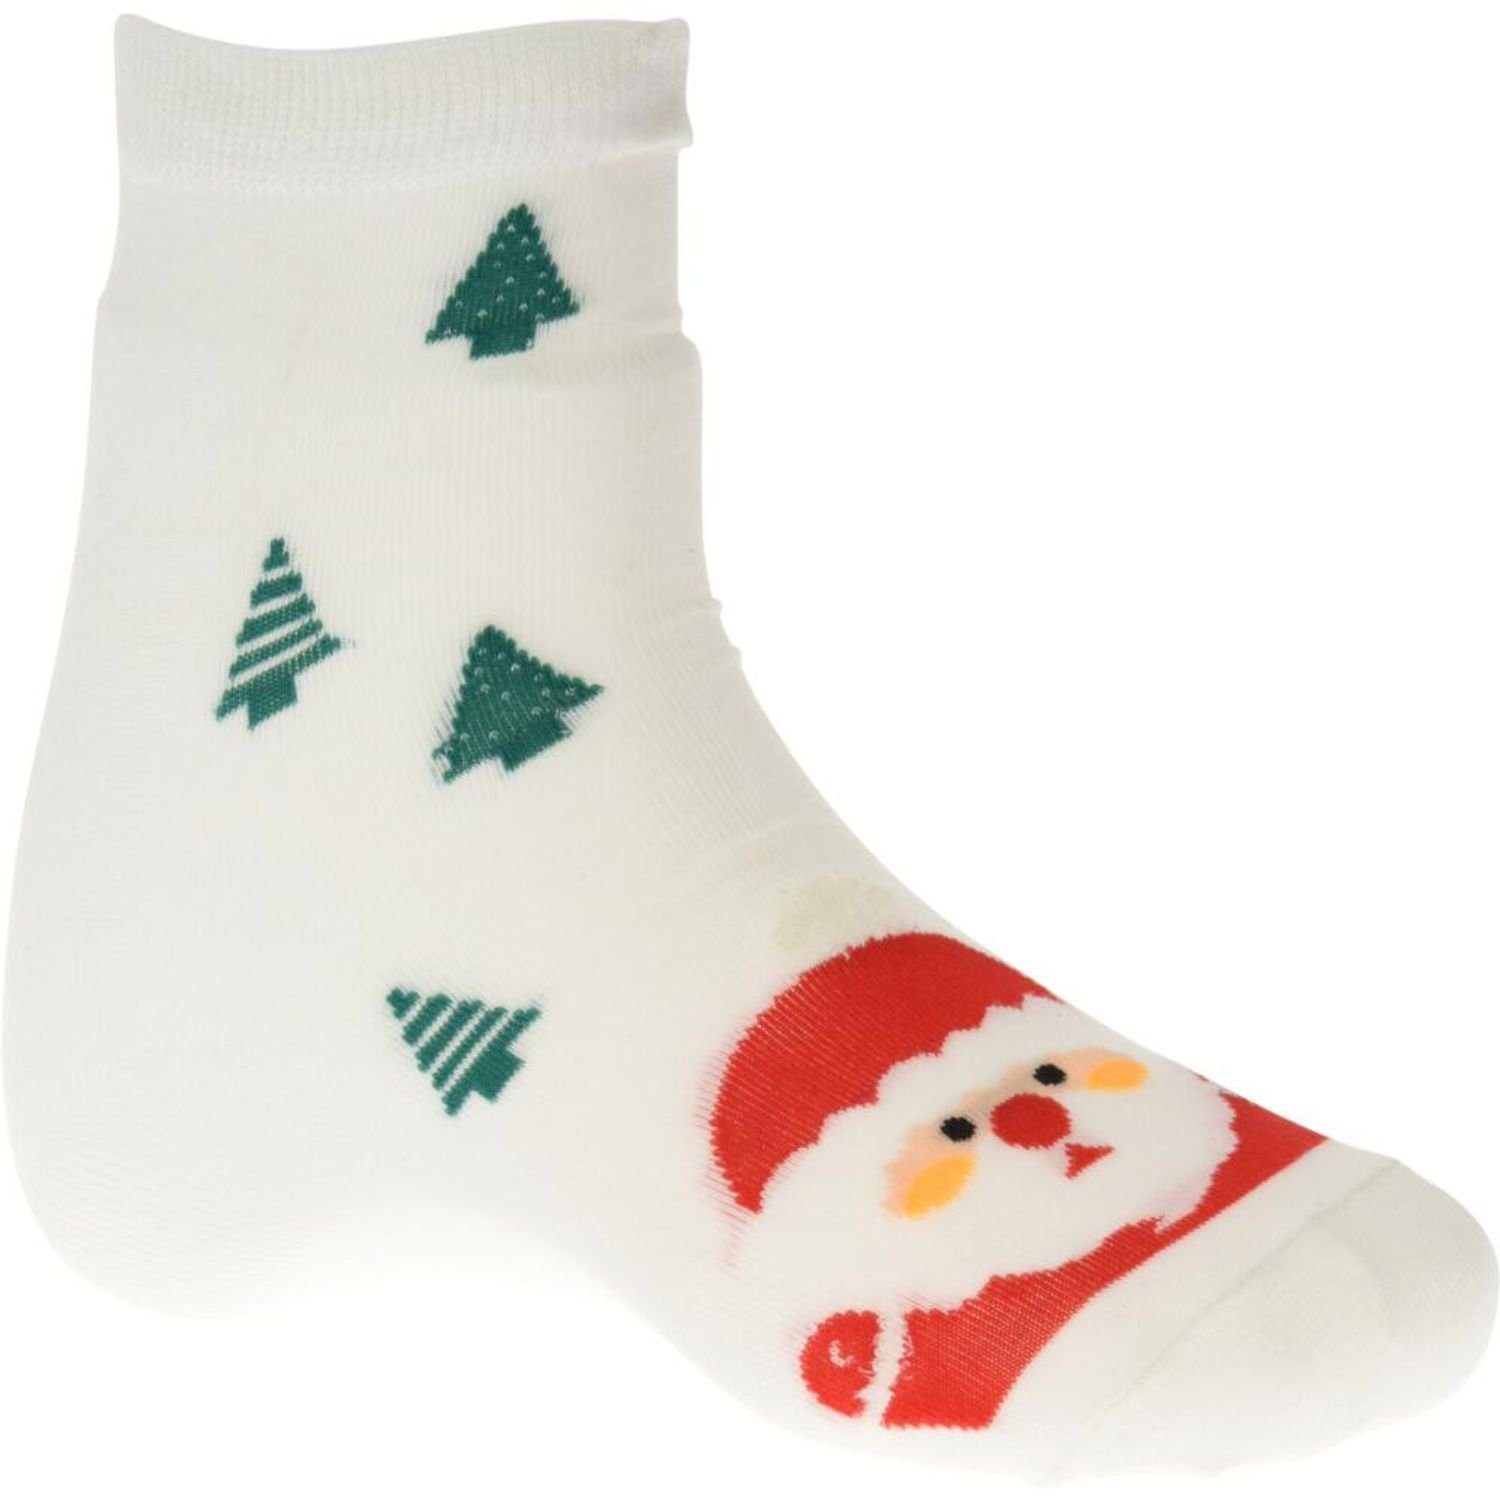 12x Christbaumschmuck Christbaumschmuck Koopman Nikolausgeschenk Socken Strumpf Weihnachtskugel